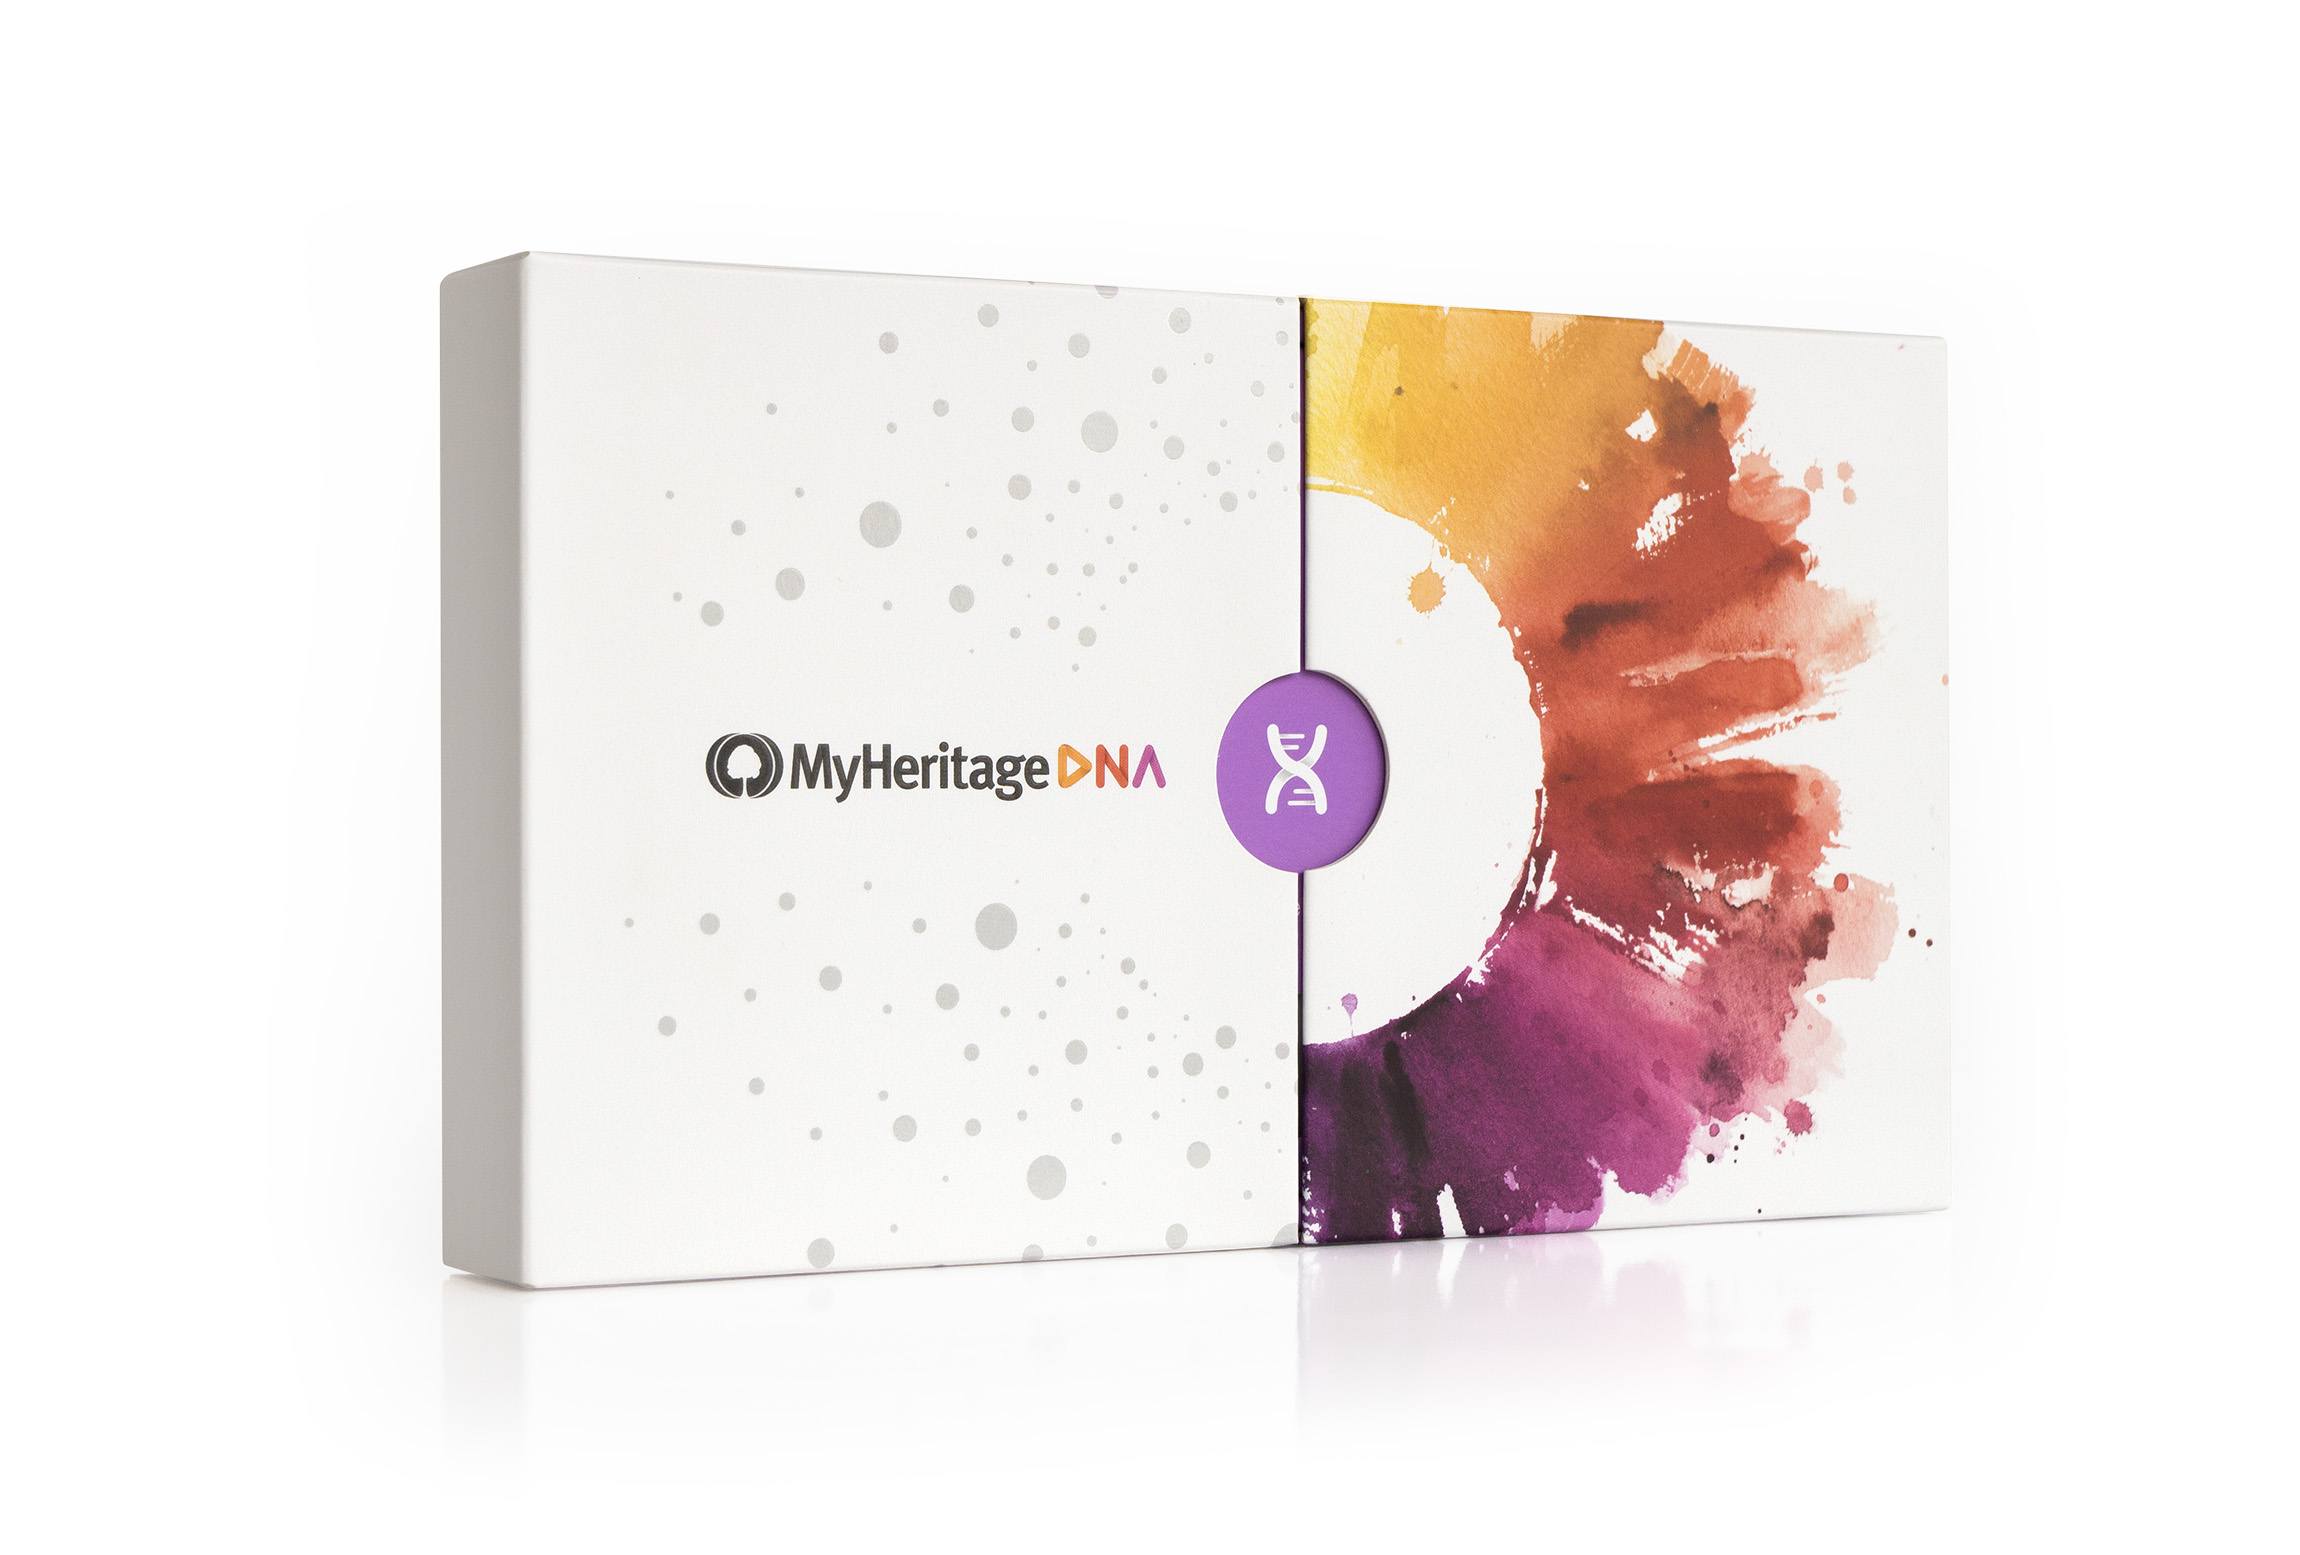 Nytt hjelpemiddel i MyHeritage DNA: <br>Se felles etternavn med matcher!